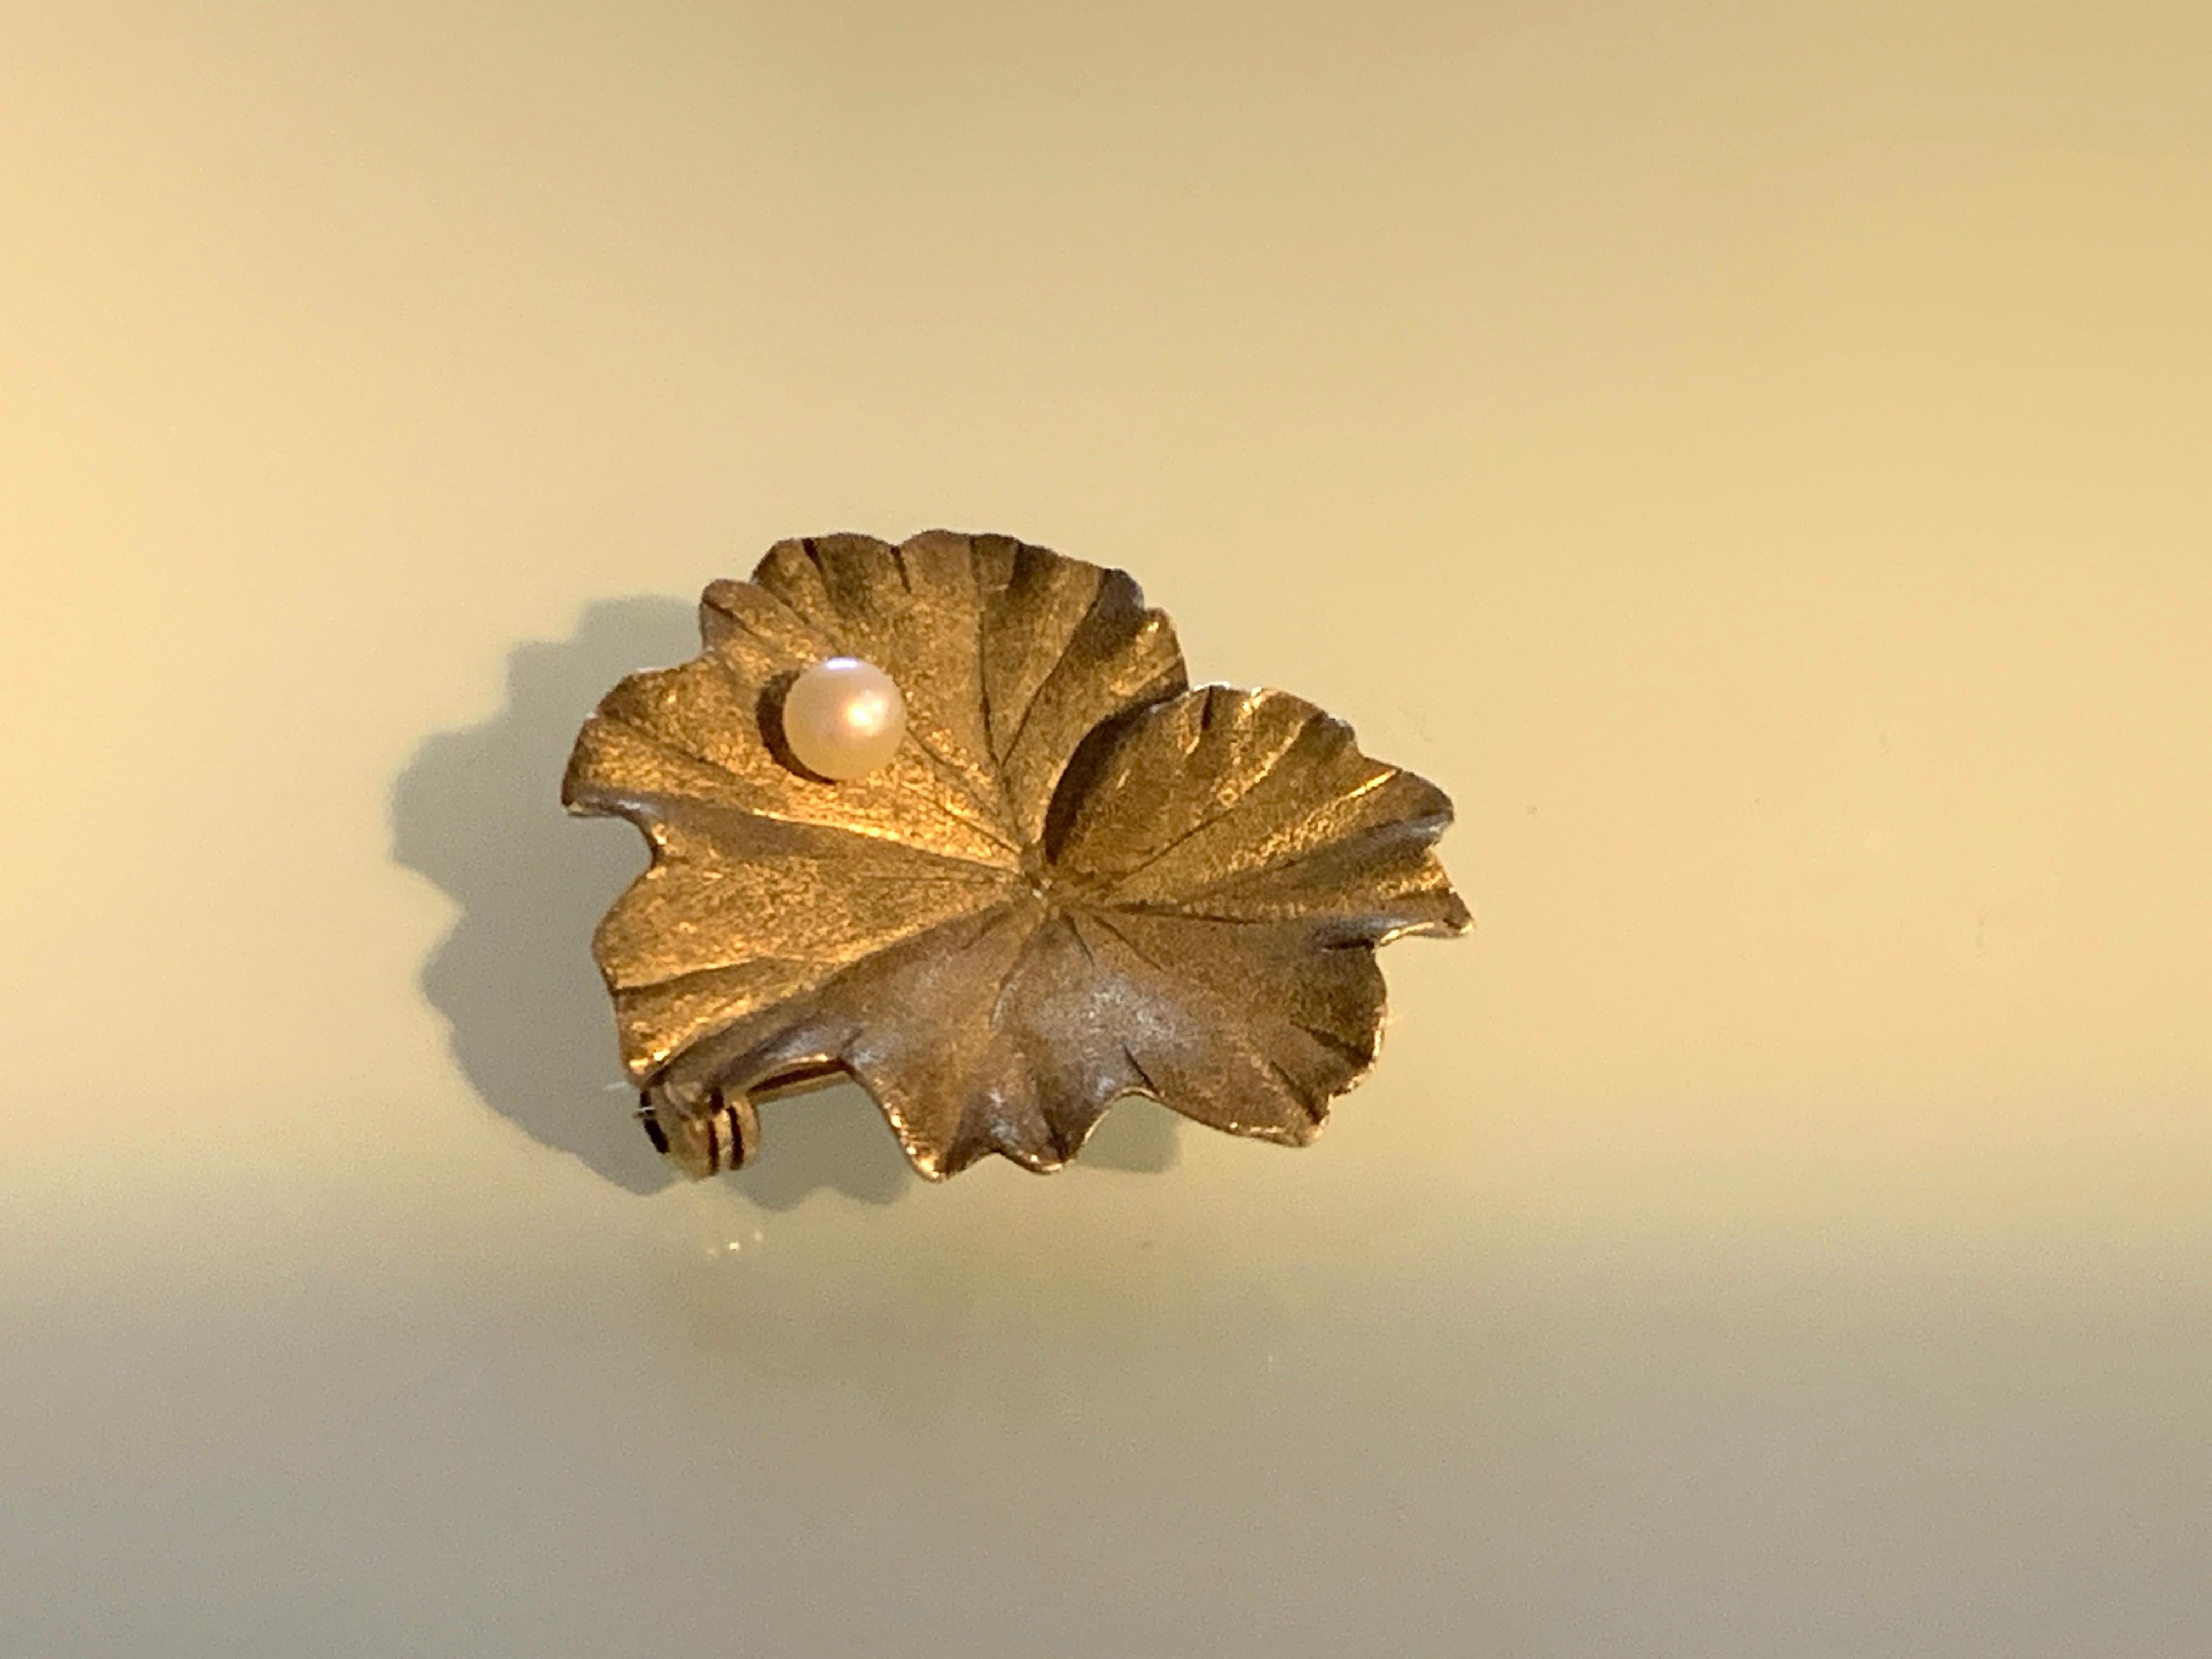 Schöne seltene Seerose
Brosche aus 9ct Gold
mit einer Zuchtperle, die auf ihrer Oberfläche balanciert
Hat eine schöne sandgestrahlte Oberfläche, die eine dunklere Ausstrahlung hat -
rückseitig vollständig gestempelt
Londoner Importmarke 9 375 und